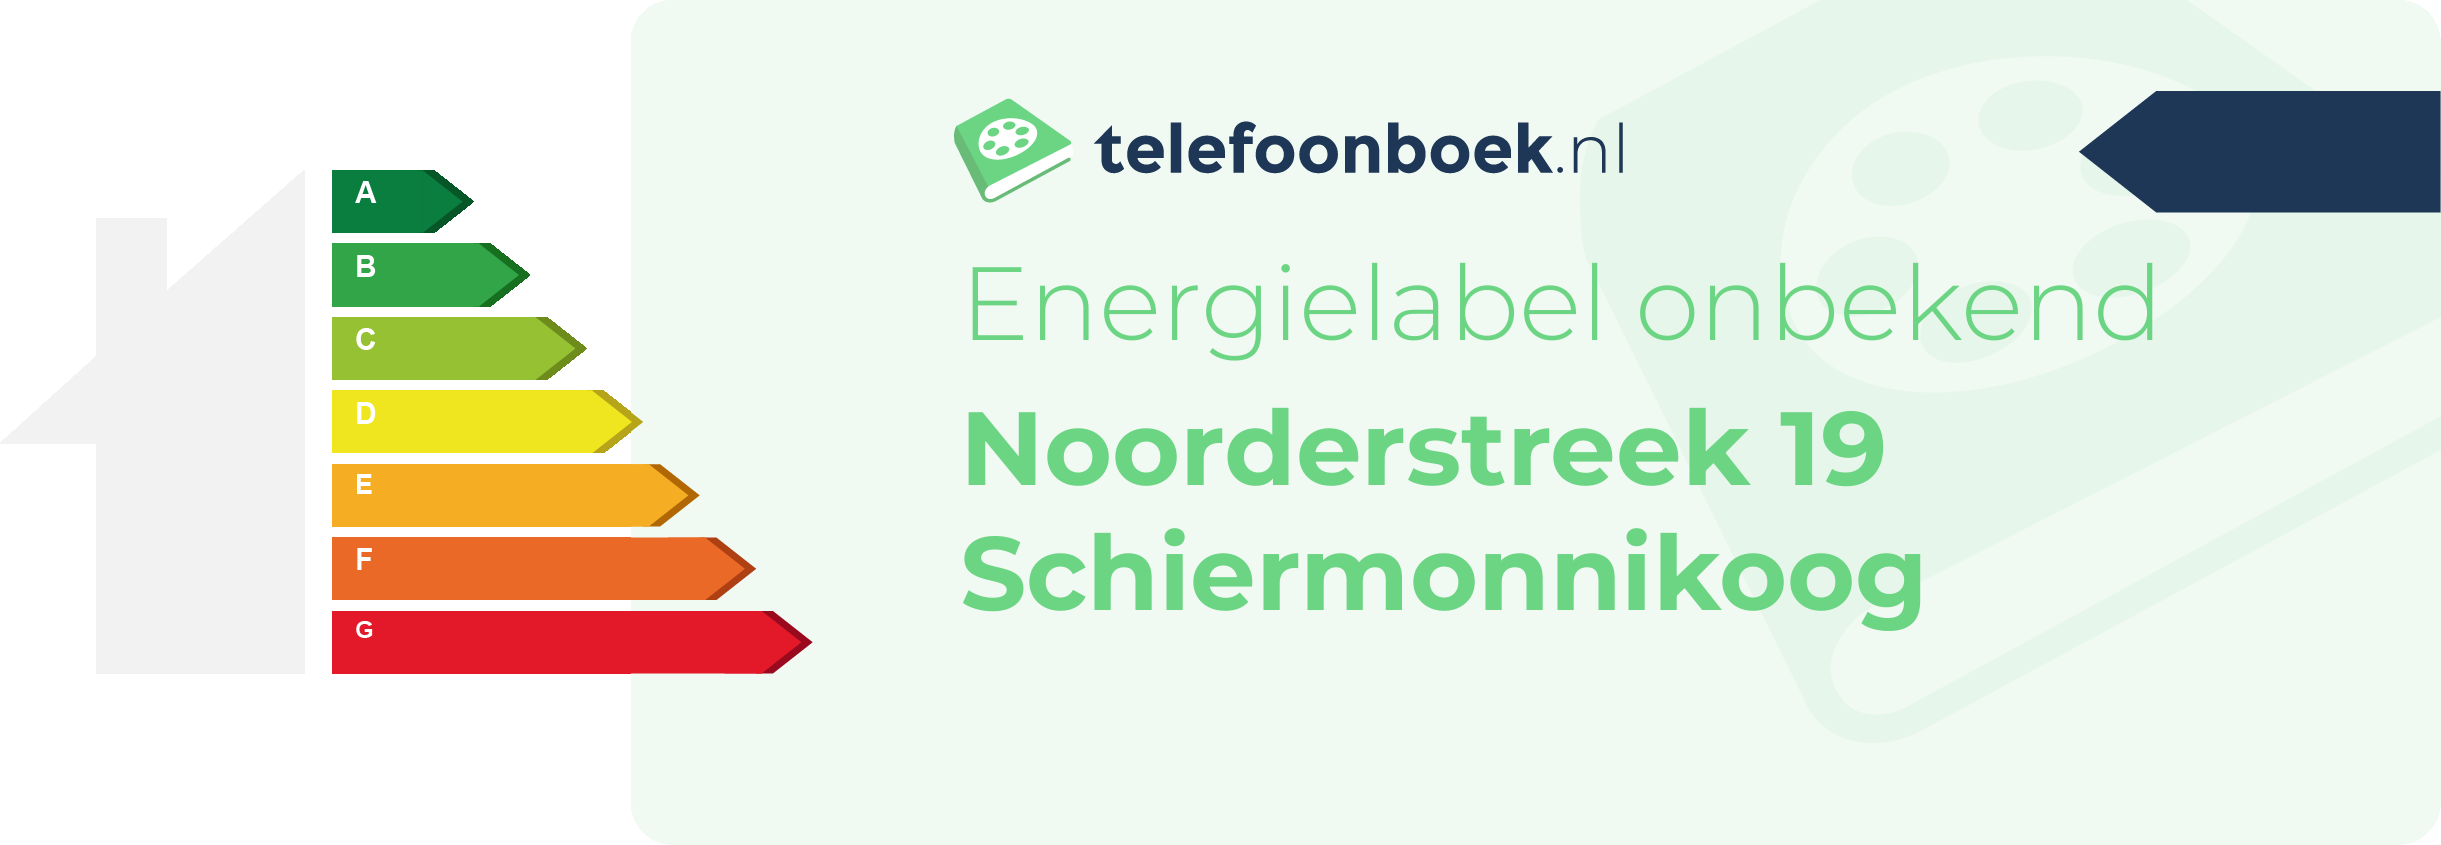 Energielabel Noorderstreek 19 Schiermonnikoog